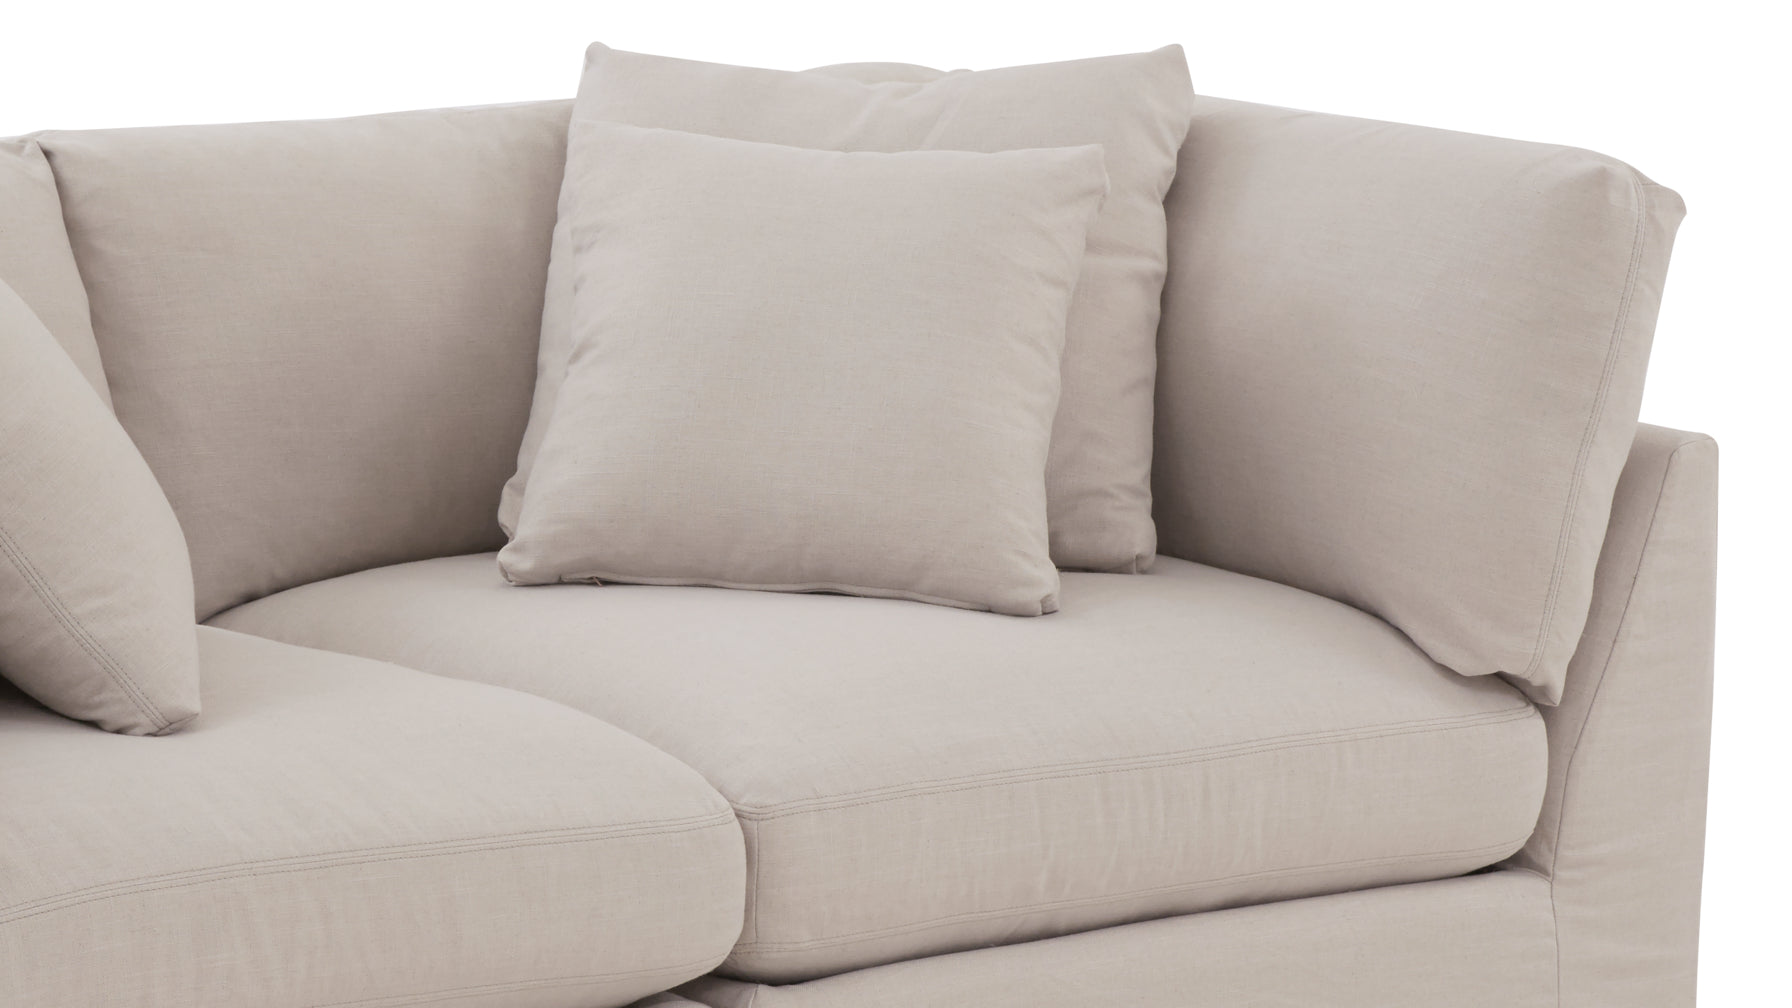 Get Together™ 2 Piece Modular Sofa, Large, Clay - Image 9